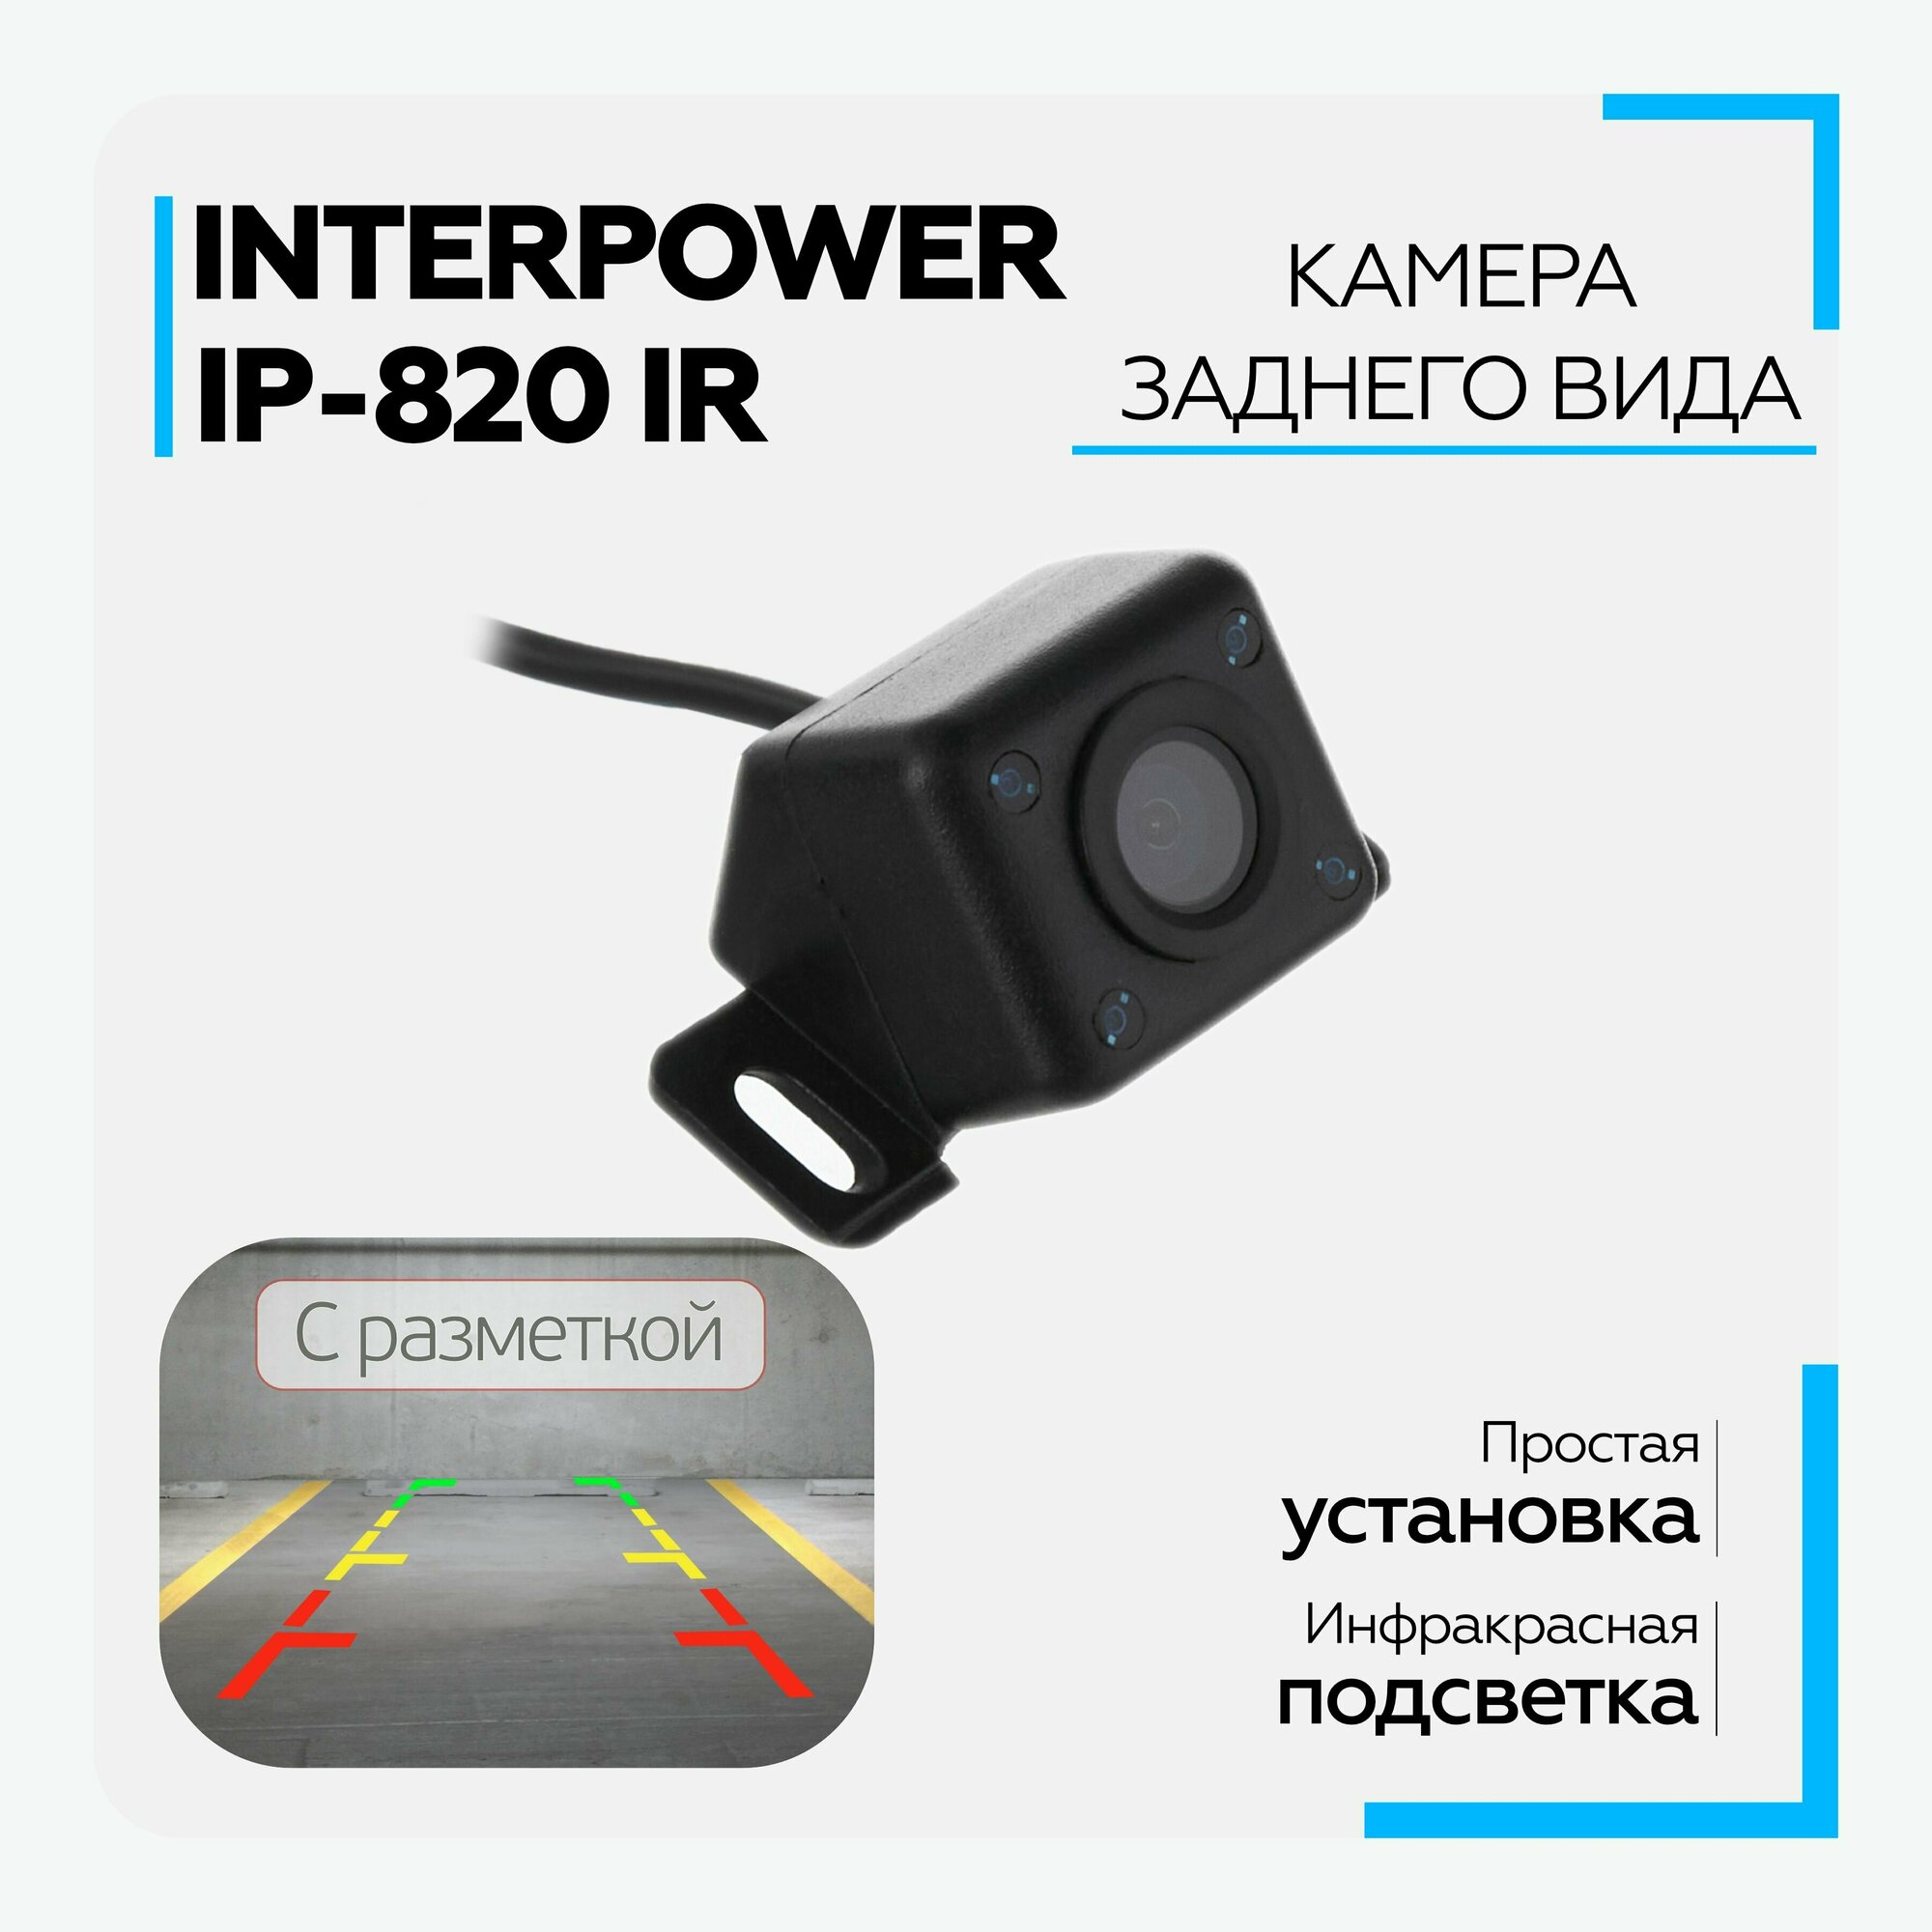 Камера заднего вида Interpower IP-820 IR (с инфракрасной подсветкой)